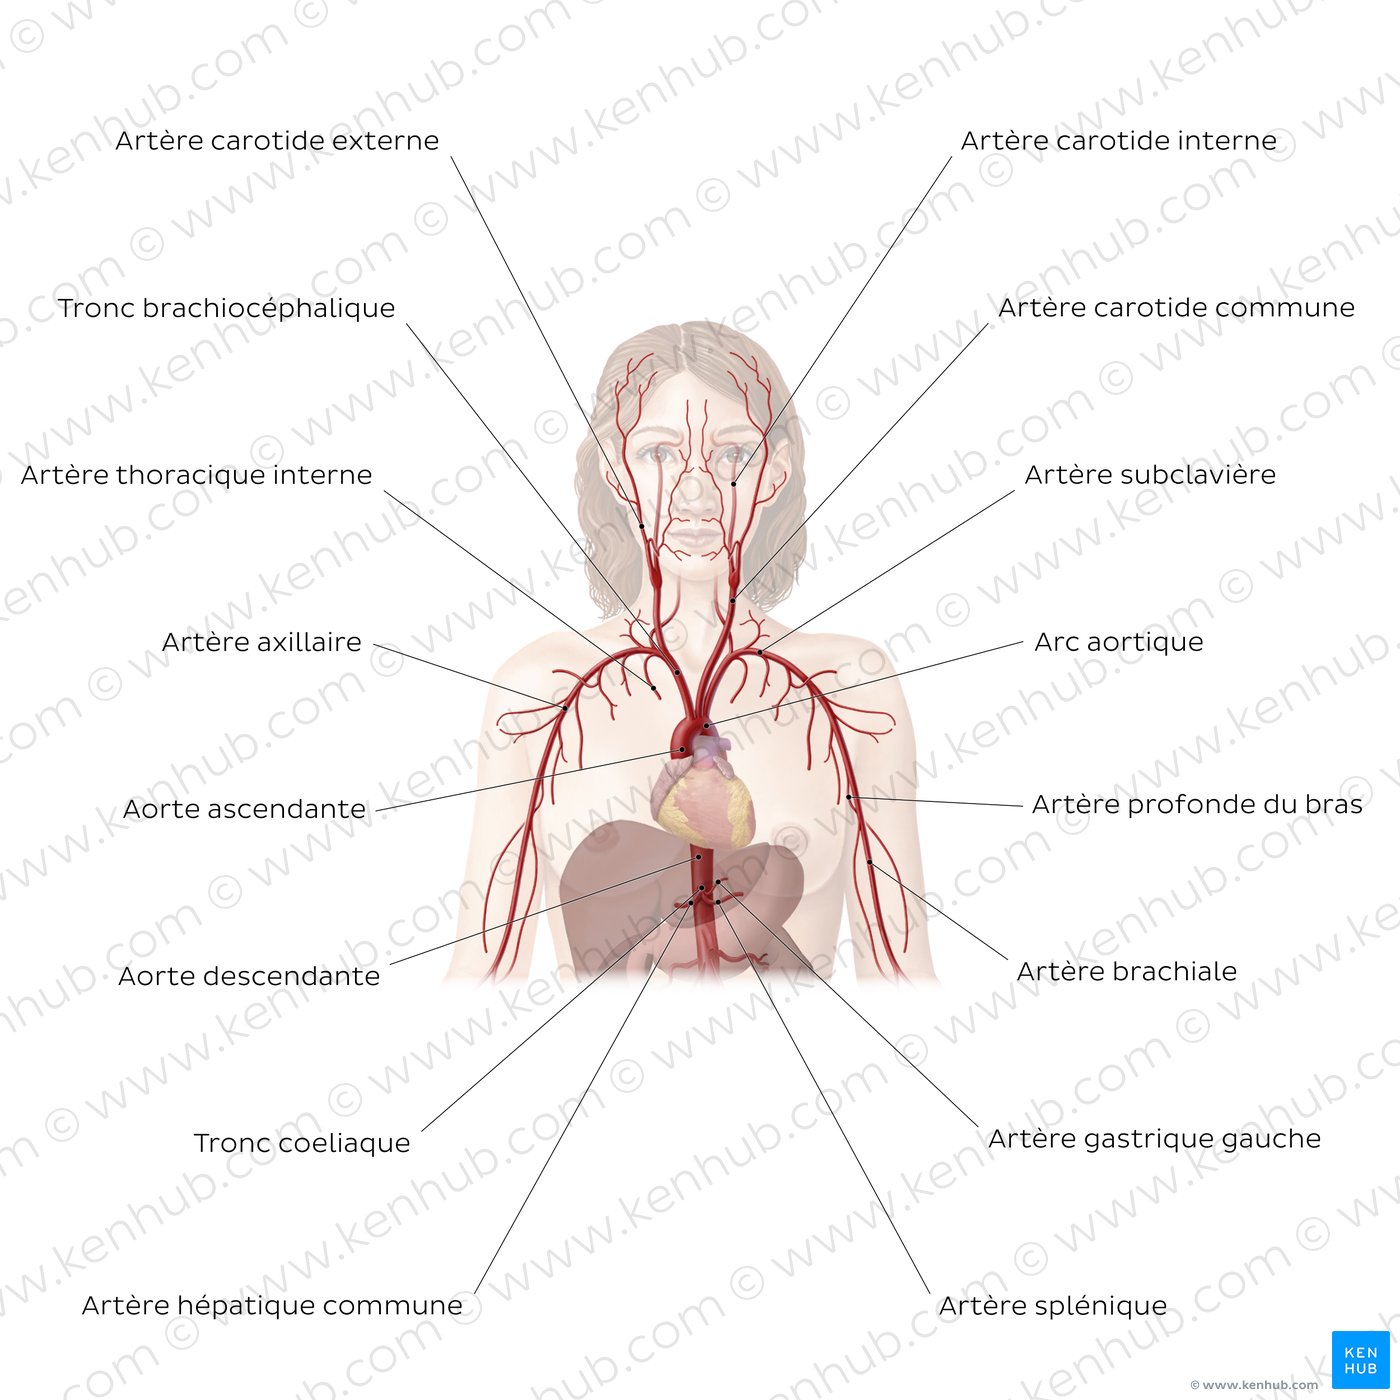 Système cardiovasculaire : Artères de la partie supérieure du corps